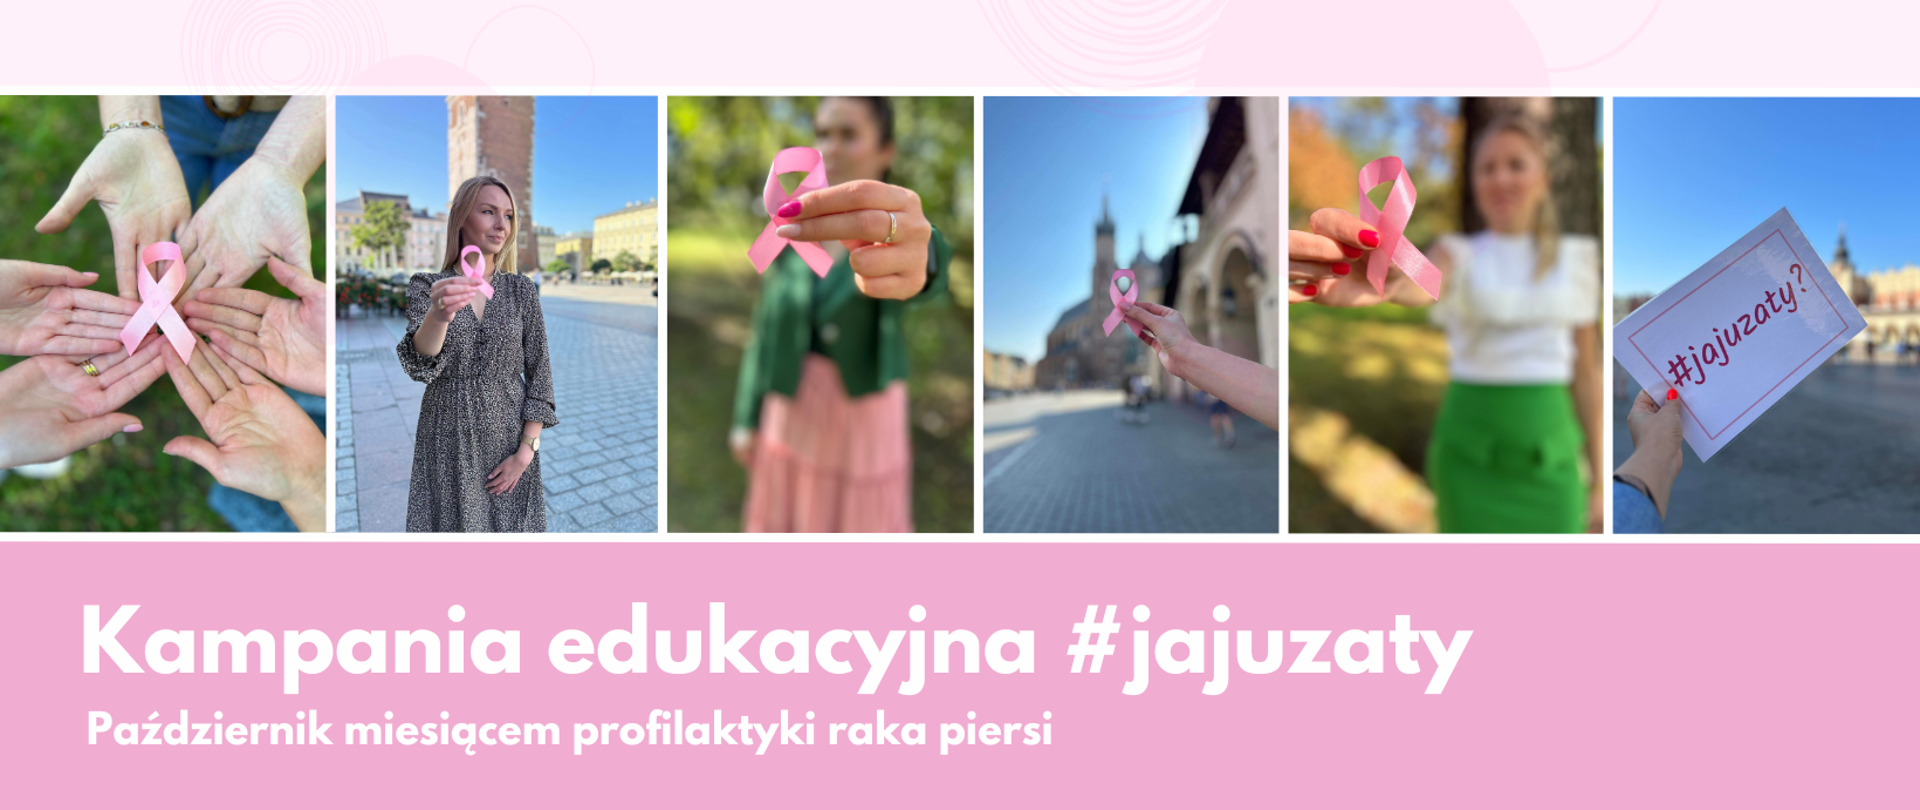 Kolaż zdjęć promujących kampanię #jajuzaty: różowa wstążka będąca symbolem walki z rakiem piersi leży na wewnętrznej stronie sześciu dłoni, młoda kobieta o blond włosach stojąca na tle Wieży Ratuszowej w Krakowie, trzyma w prawej ręce różową wstążkę, kobieta o czarnych, splecionych w warkocz włosach stojąca na tle ogrodu trzyma różową wstążkę, trzymana w dłoni wstążka na tle Kościoła Mariackiego, kobieta o blond włosach stojąca na tle drzewa trzyma w dłoni różową wstążkę, kartka z różowym napisem #jajuzaty? trzymana w lewej dłoni na tle krakowskiego rynku. 